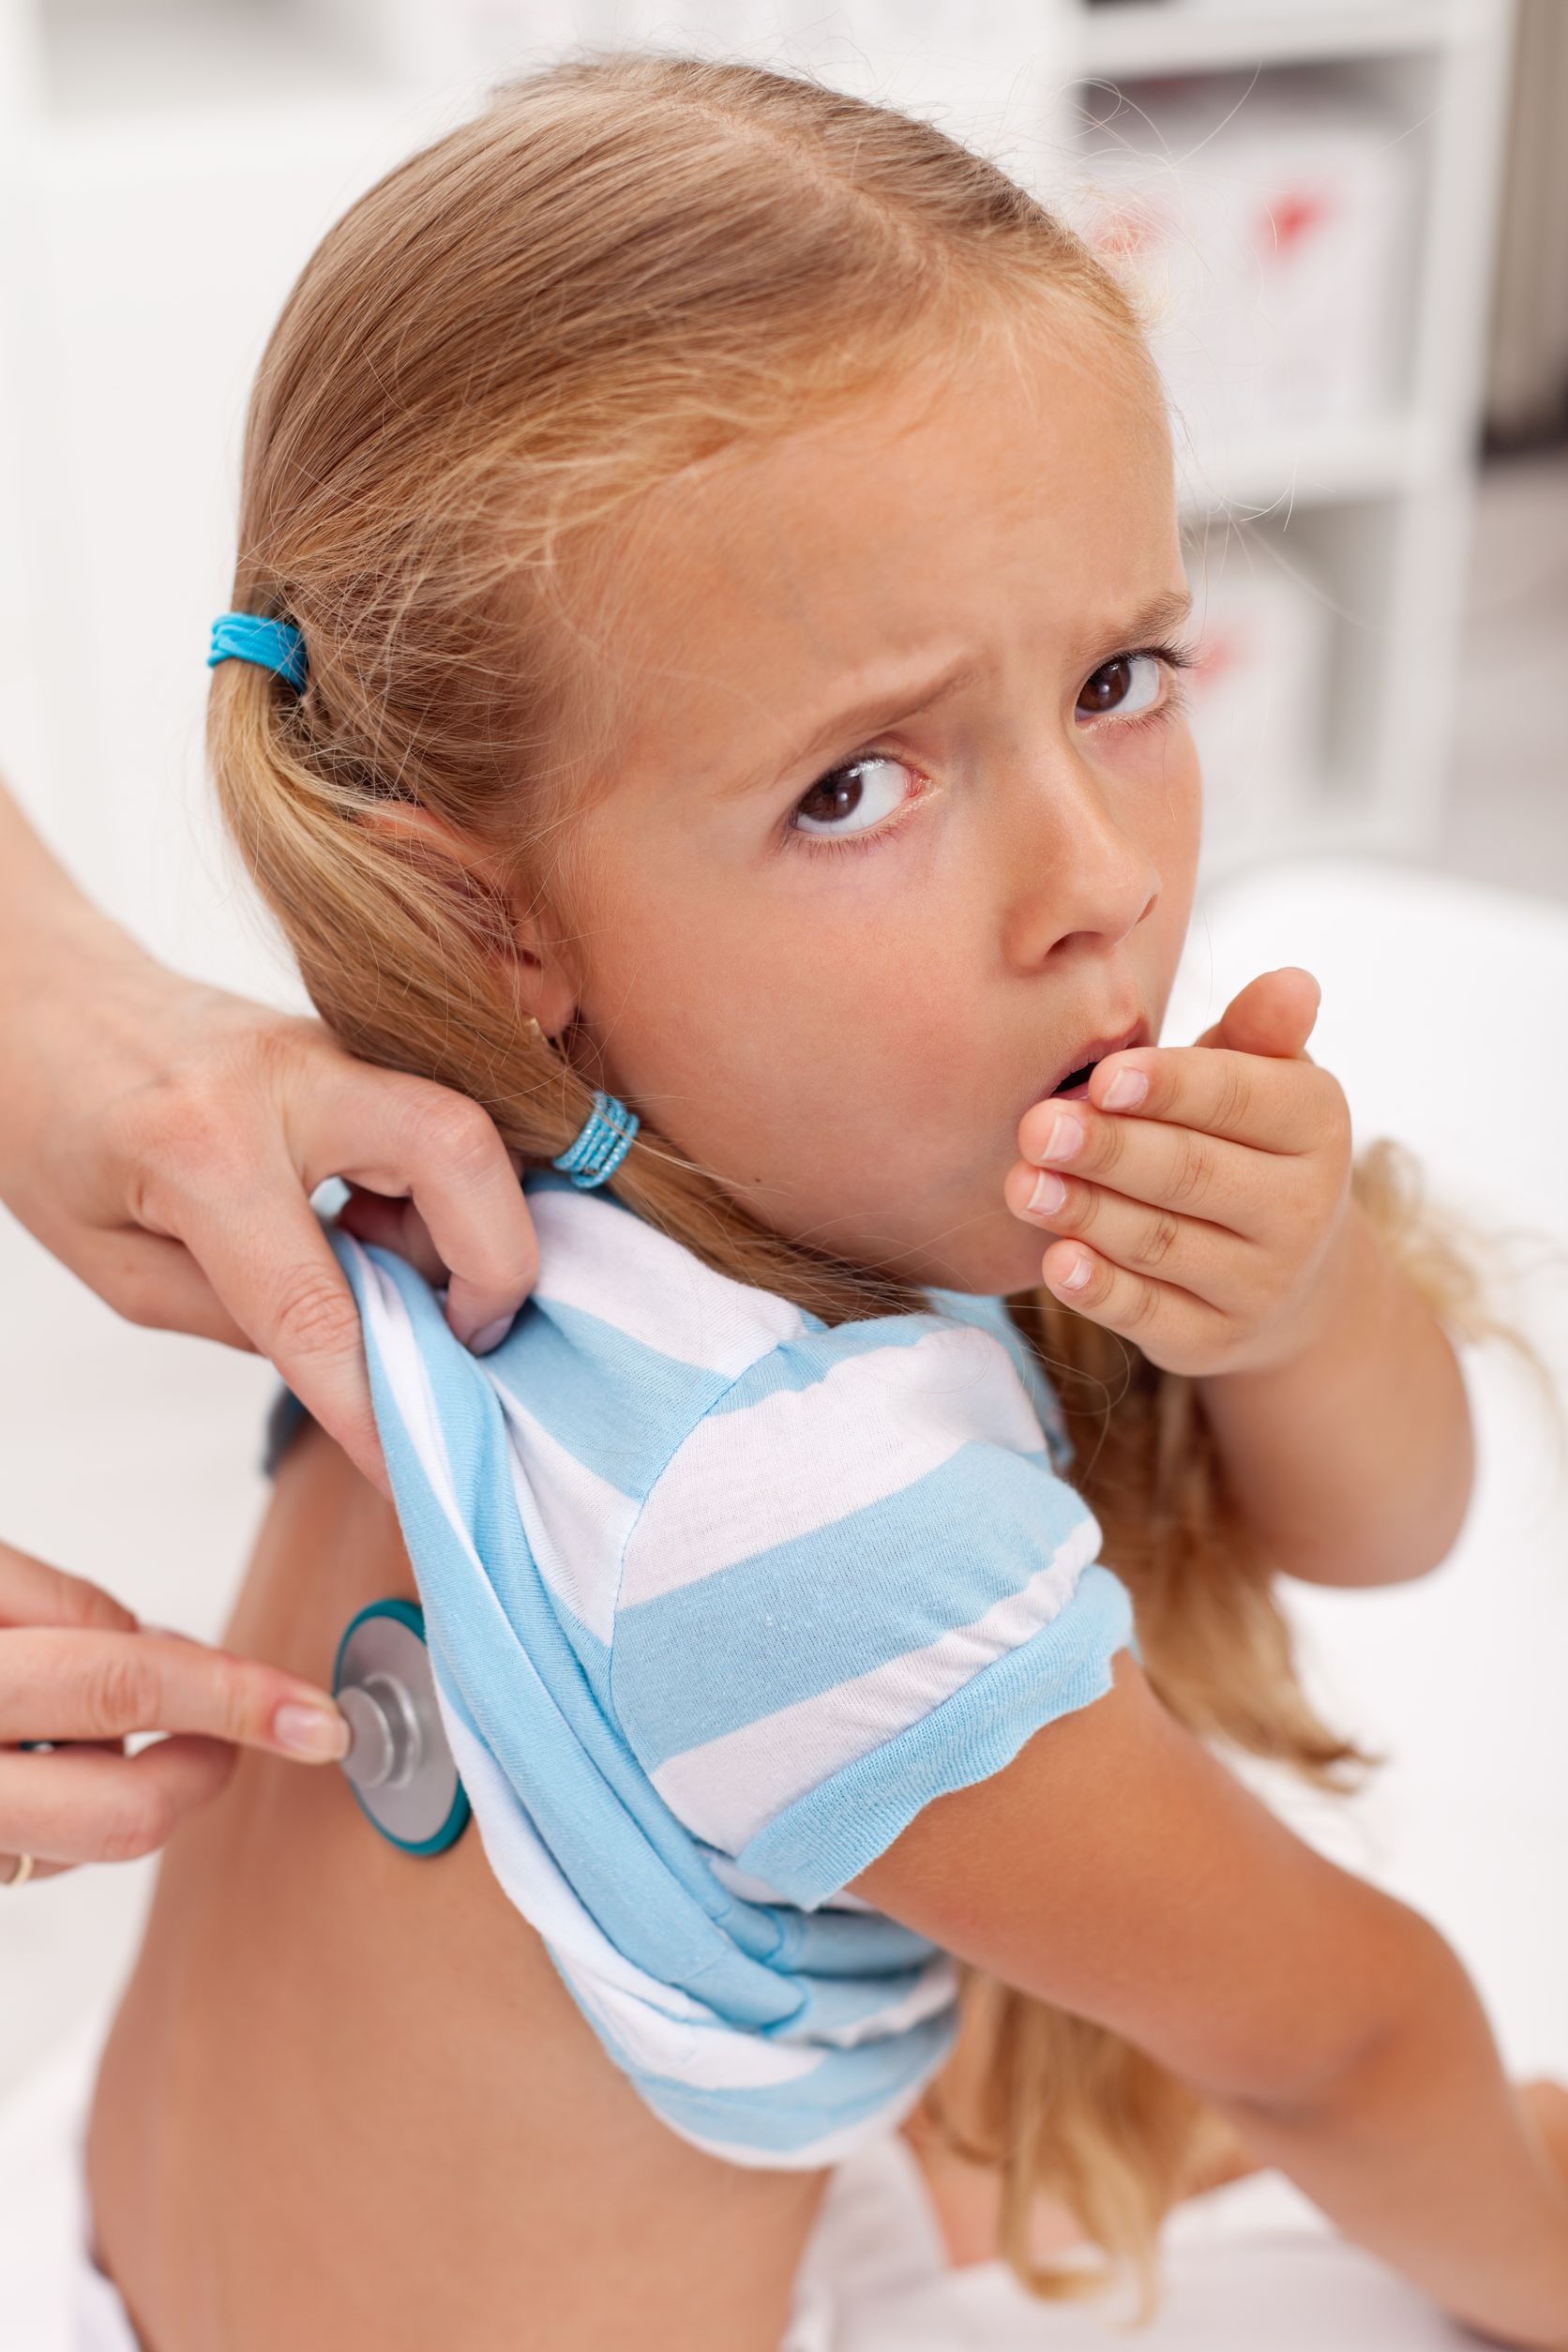 Top 10 Most Common Diseases In Children